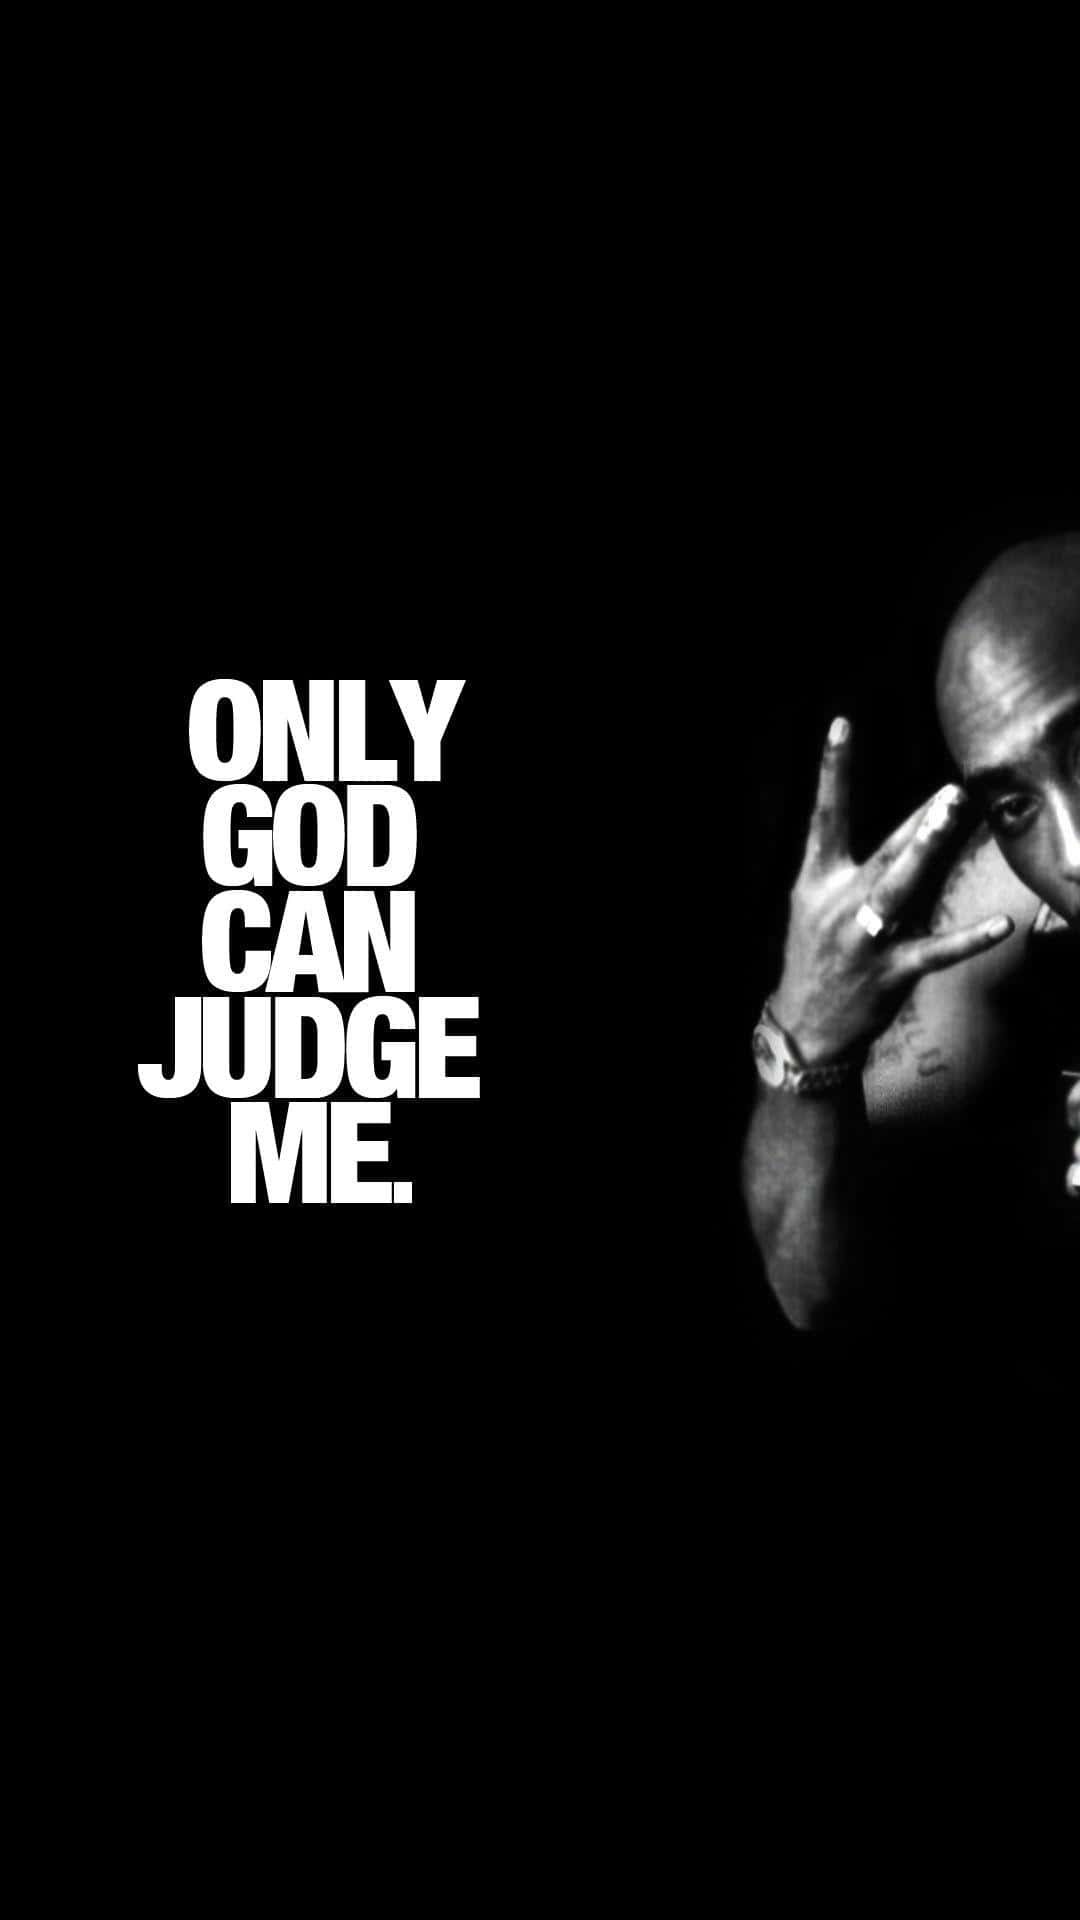 Citade Tupac Solo En Dios En El Iphone. Fondo de pantalla